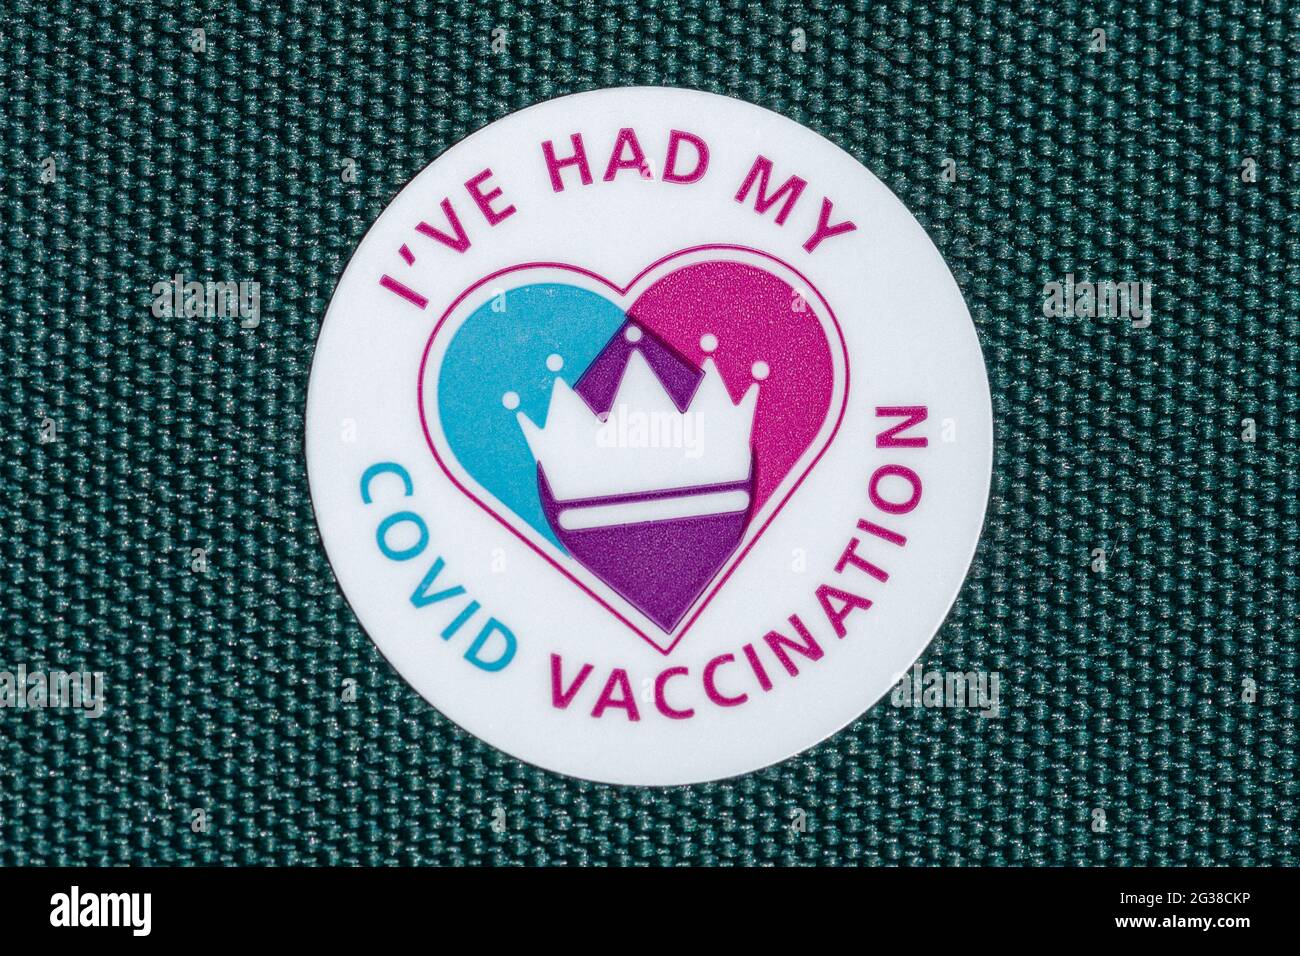 He tenido mi pegatina de vacunación covid, Reino Unido, 2021, refiriéndose a la vacuna contra el coronavirus Foto de stock